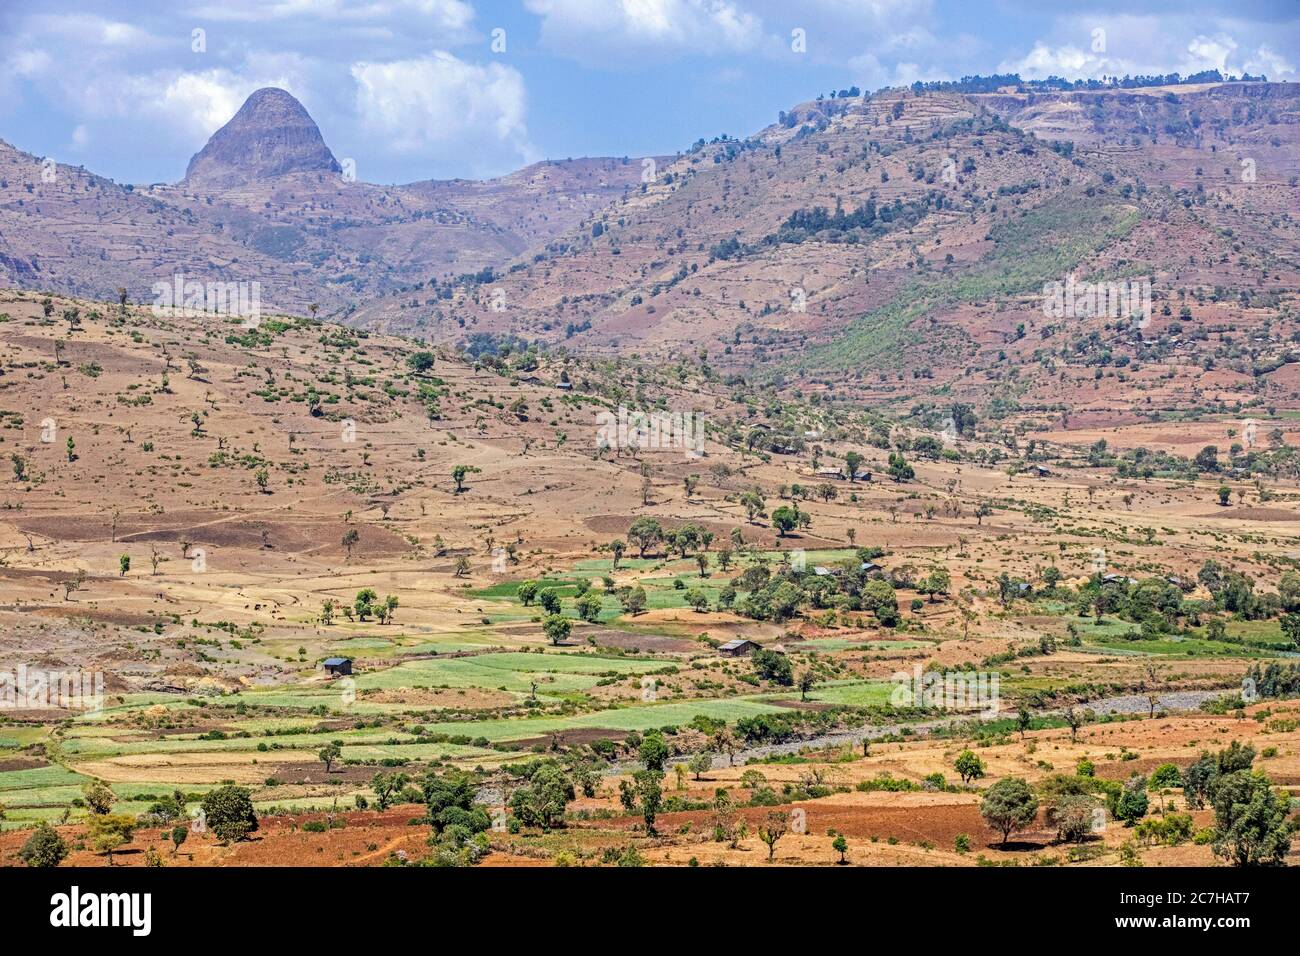 Campagna che mostra le fattorie con campi verdi in un paesaggio arido lungo la strada da Bahir Dar a Gondar nel nord Etiopia, Africa Foto Stock